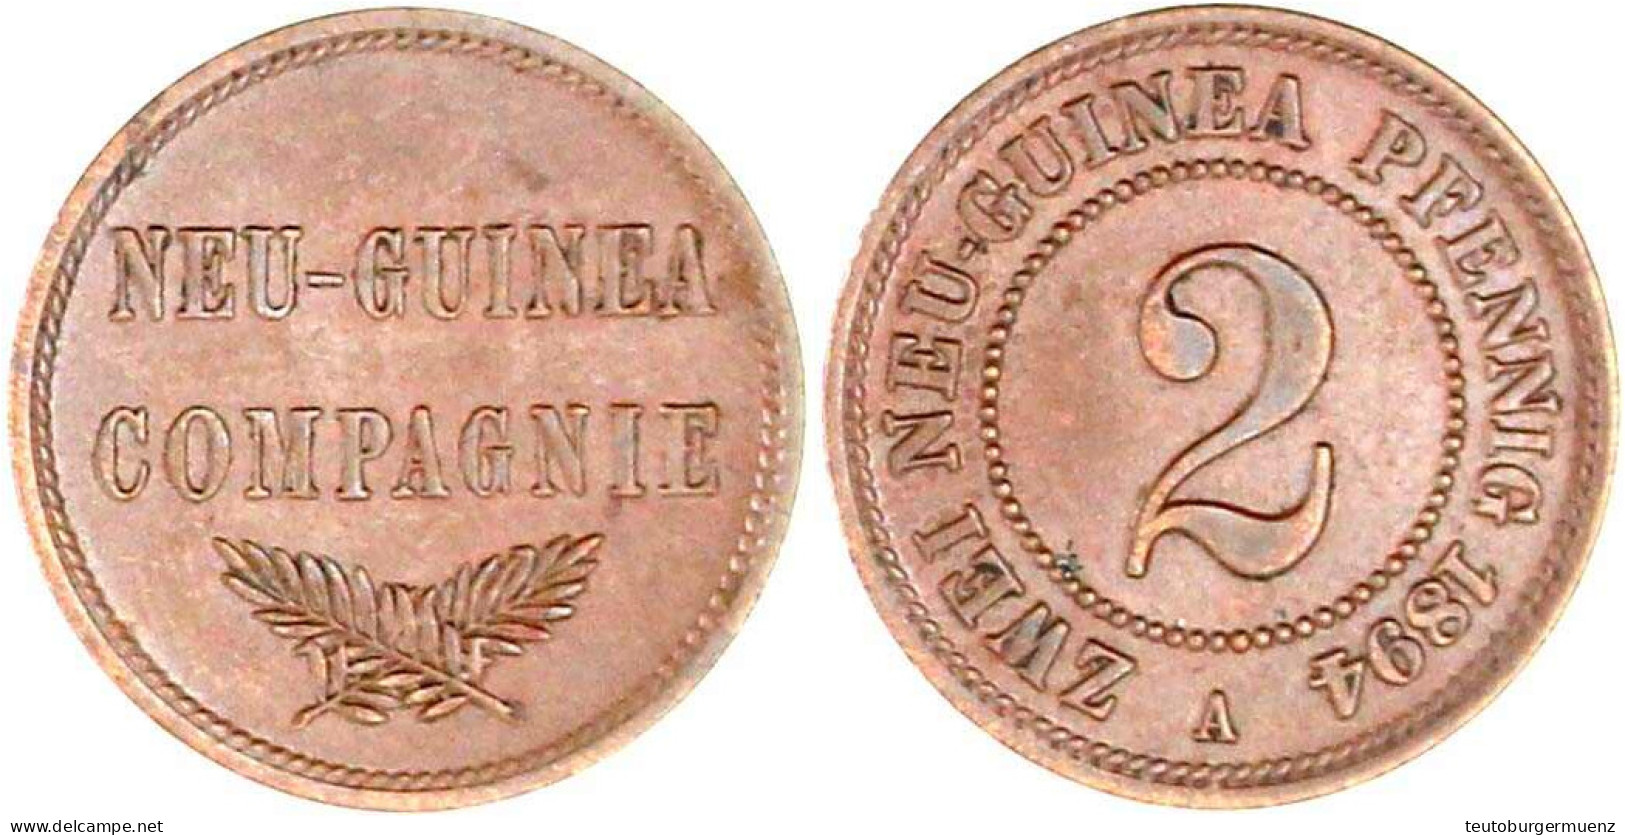 2 Neuguinea-Pfennig 1894 A. Vorzüglich. Jaeger 702. - German New Guinea